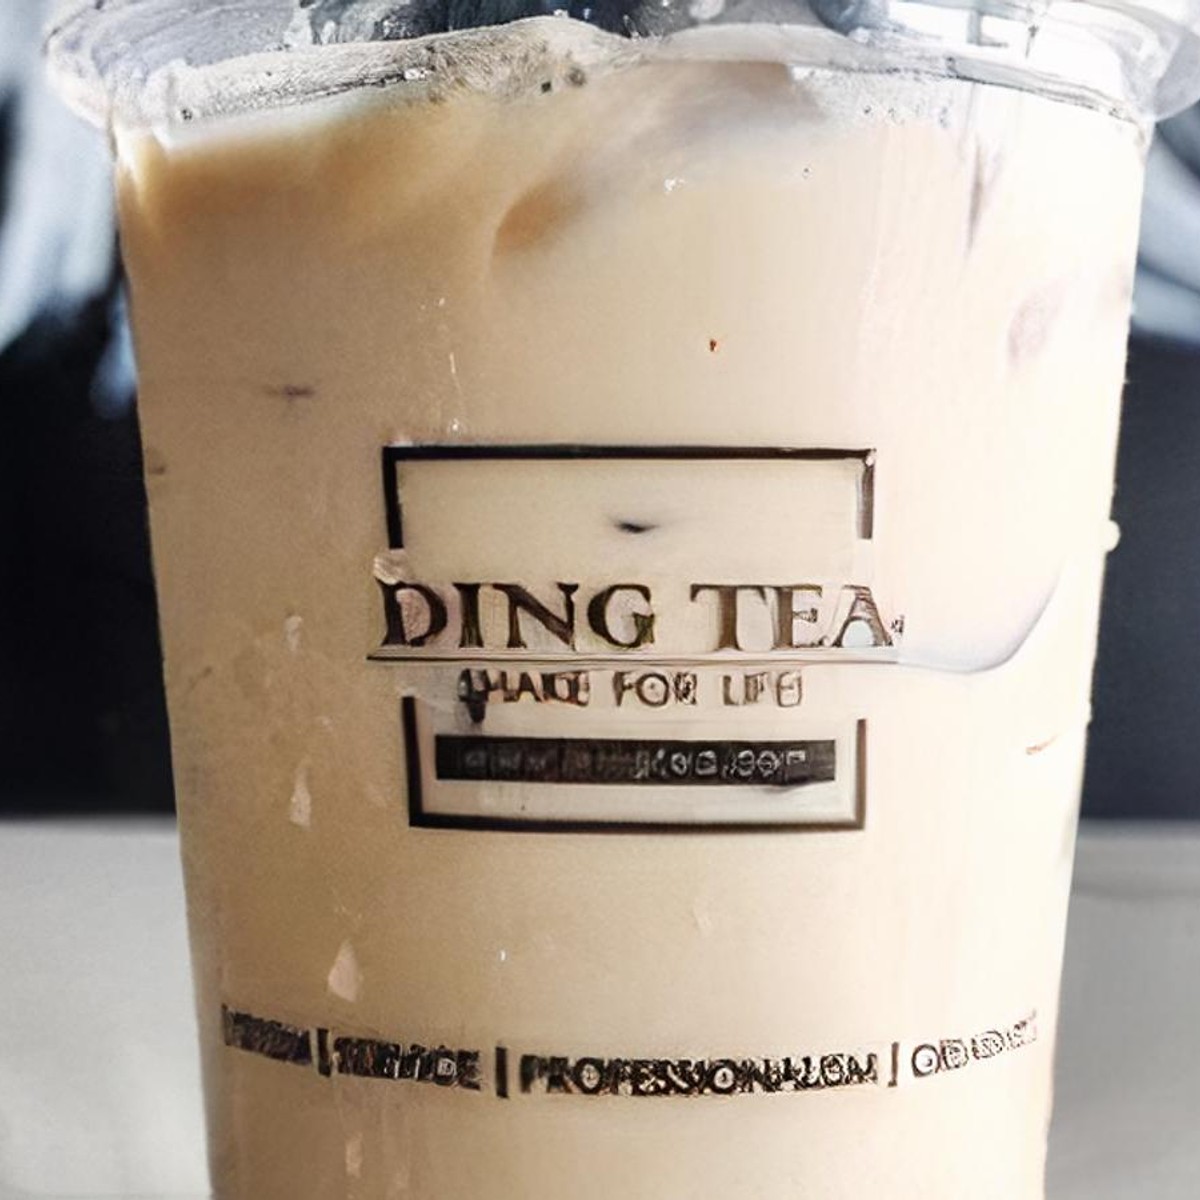 Order Ding Tea (Covington) Delivery Online • Postmates